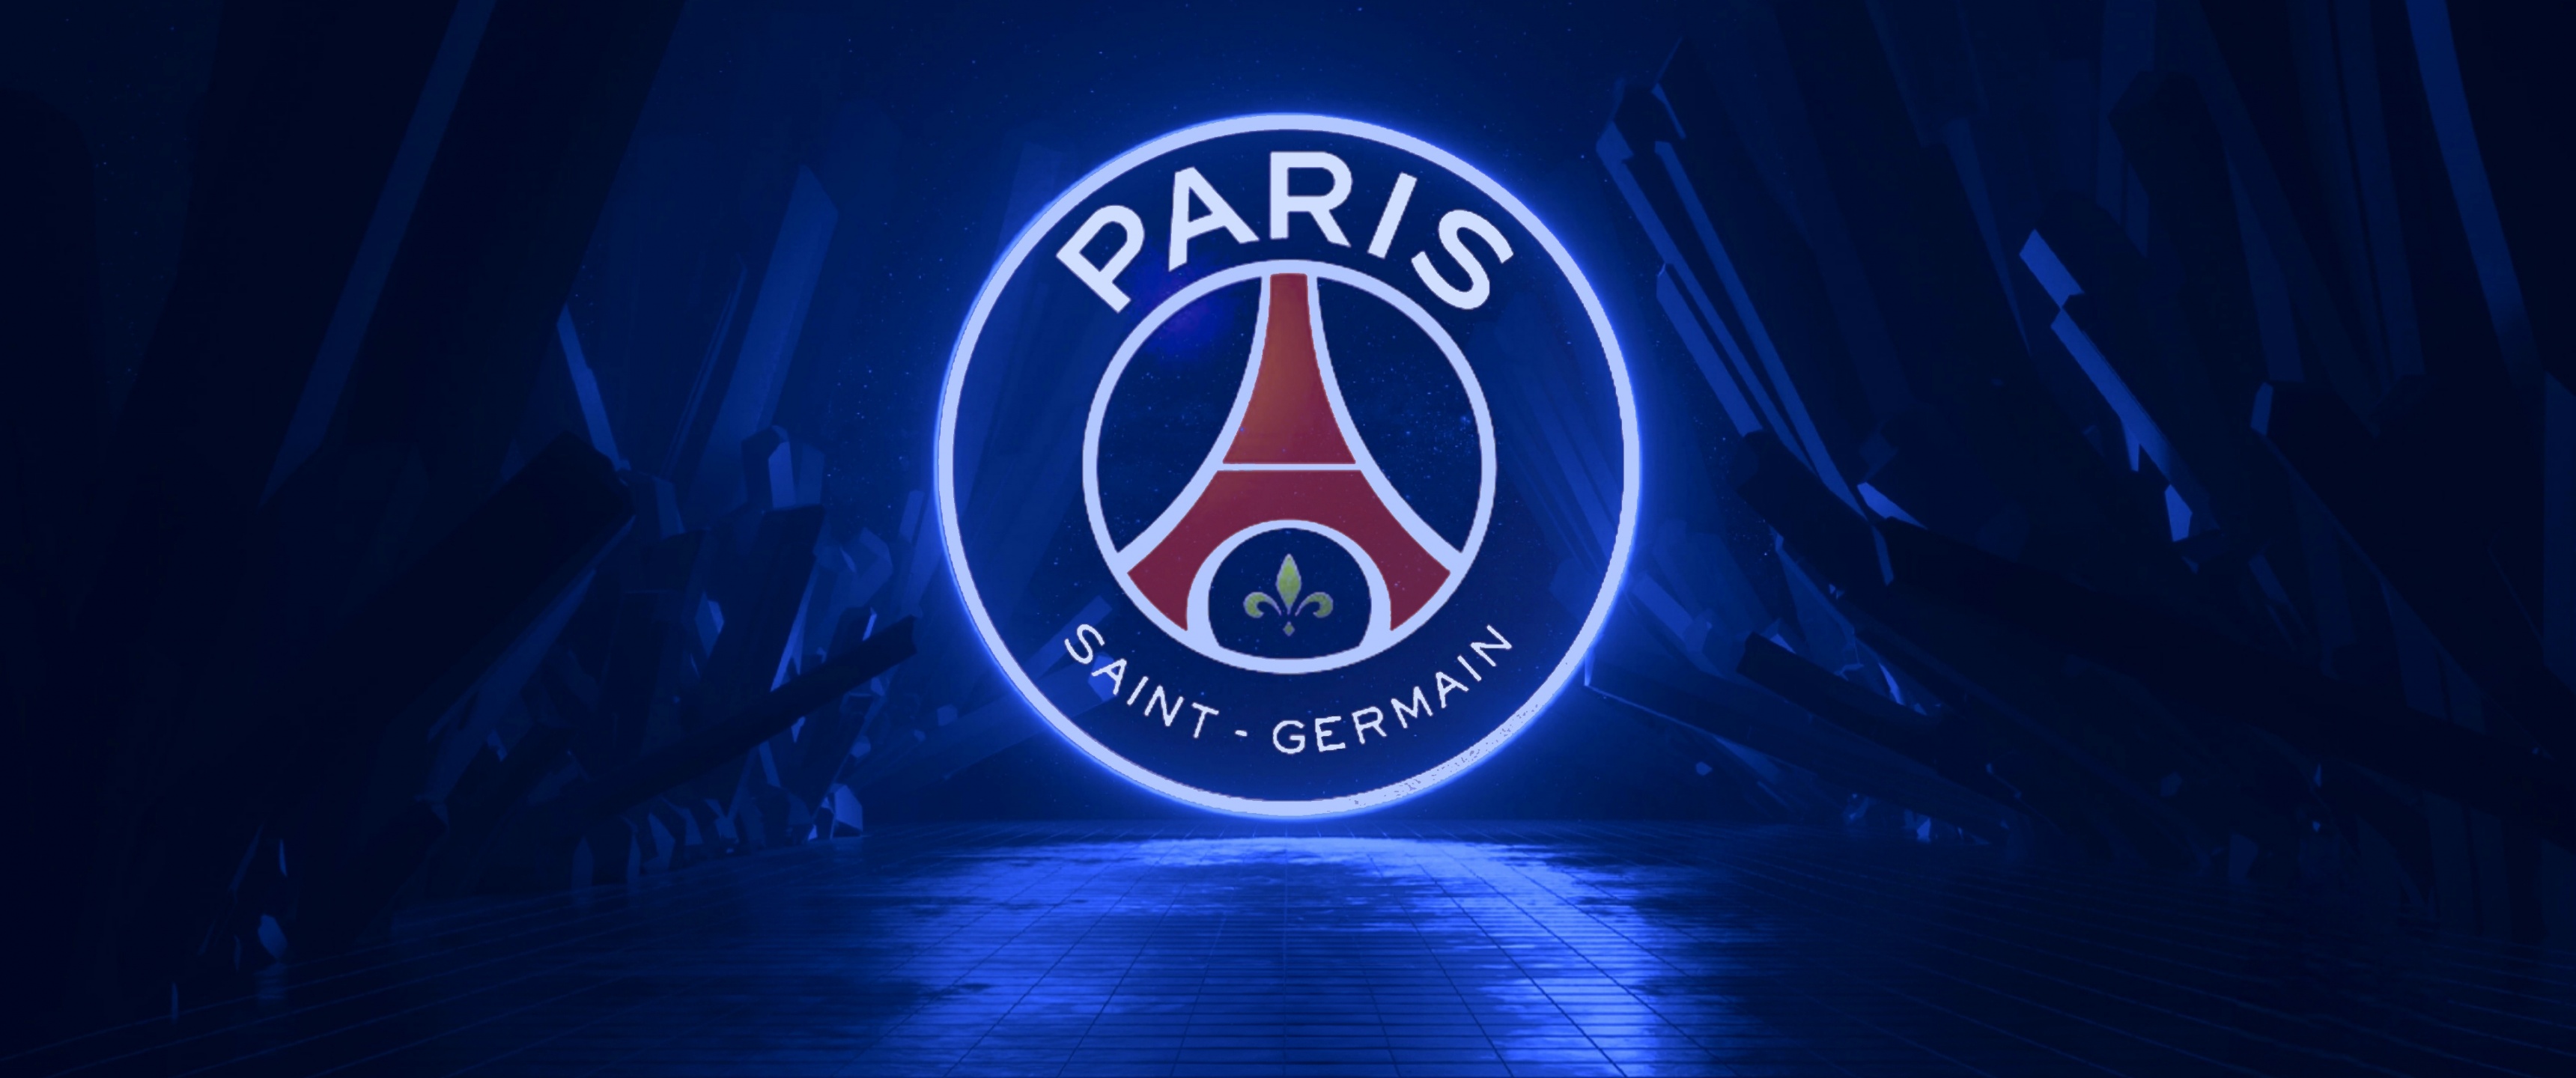 Paris Saint-Germain Wallpaper 4K, Dark aesthetic, Neon, Logo